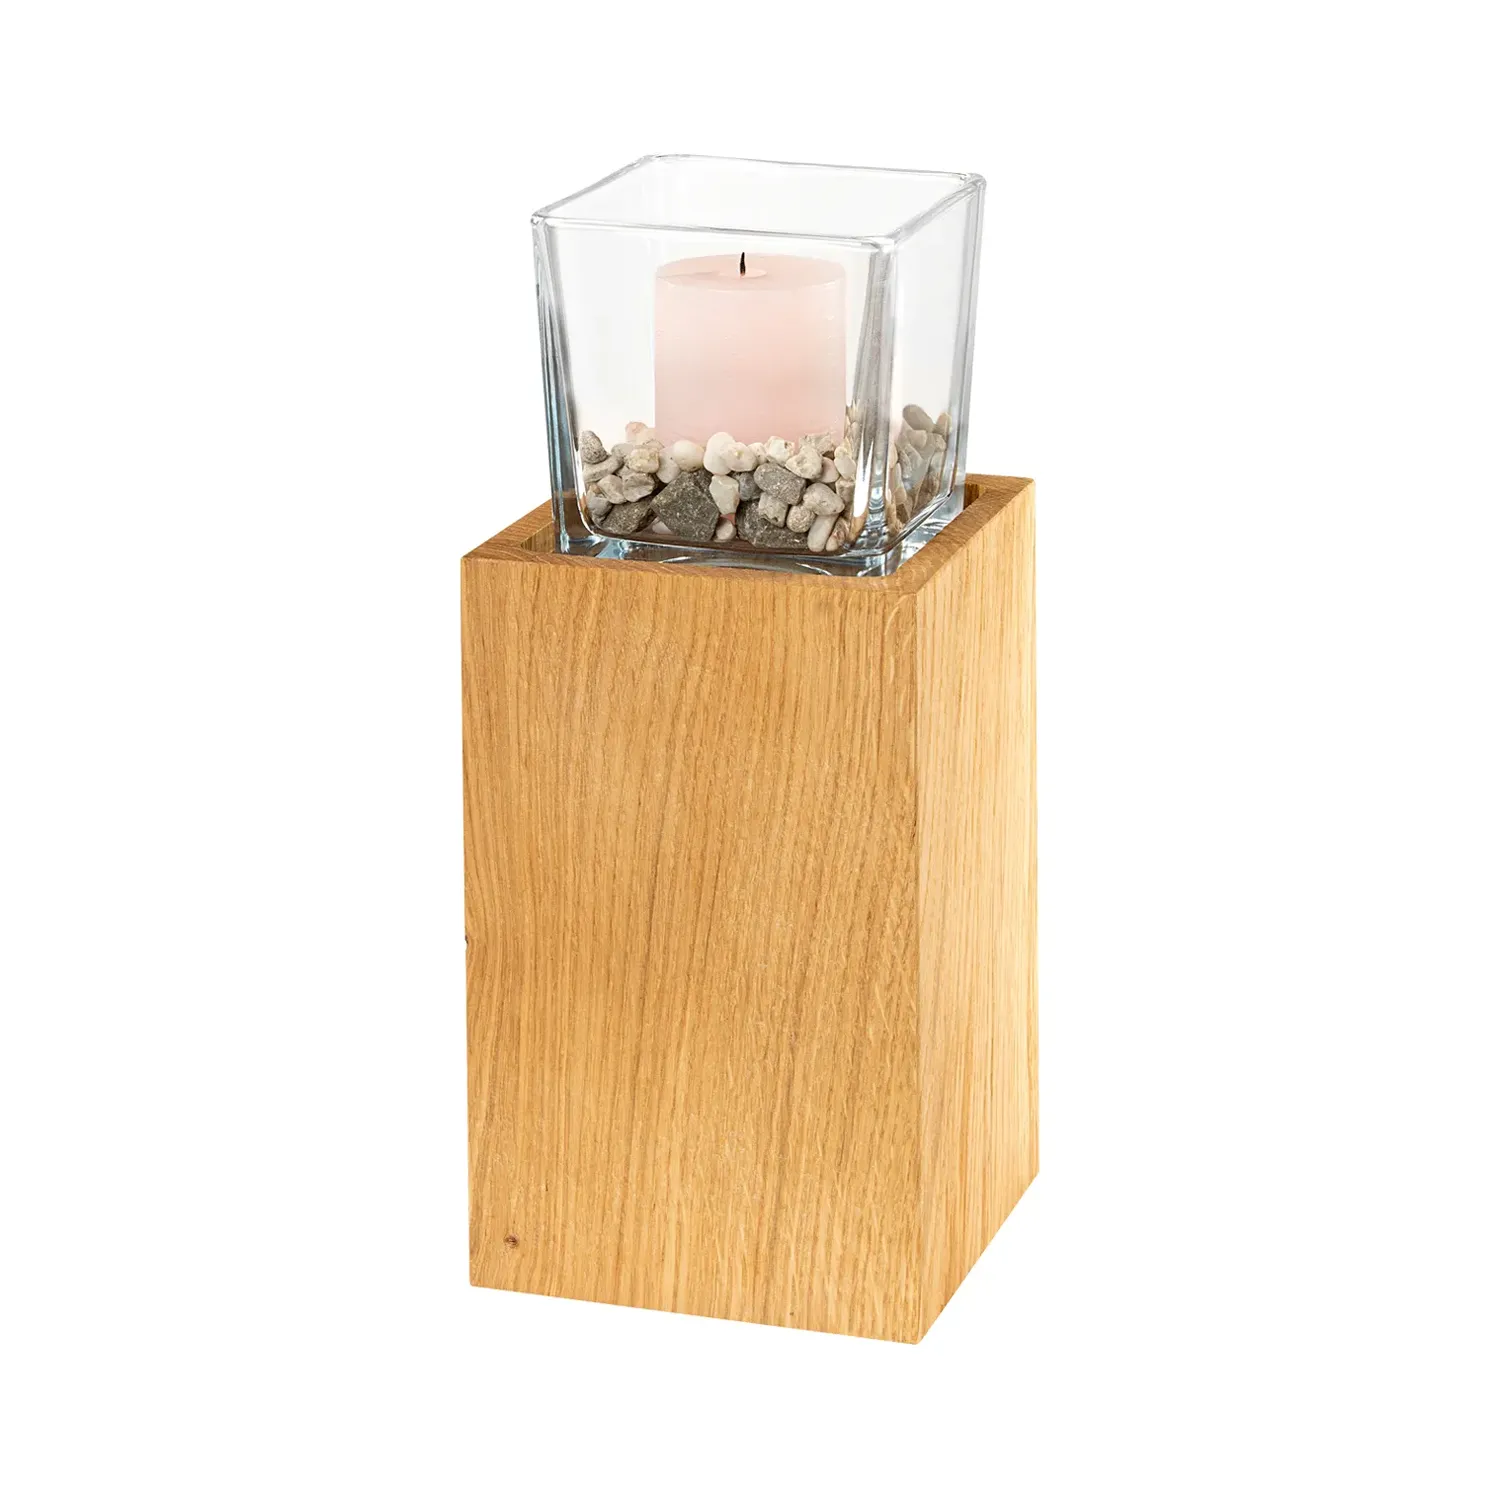 Holzsäule aus Eiche mit transparentem, viereckigem Windlicht und Kerze auf Steinen